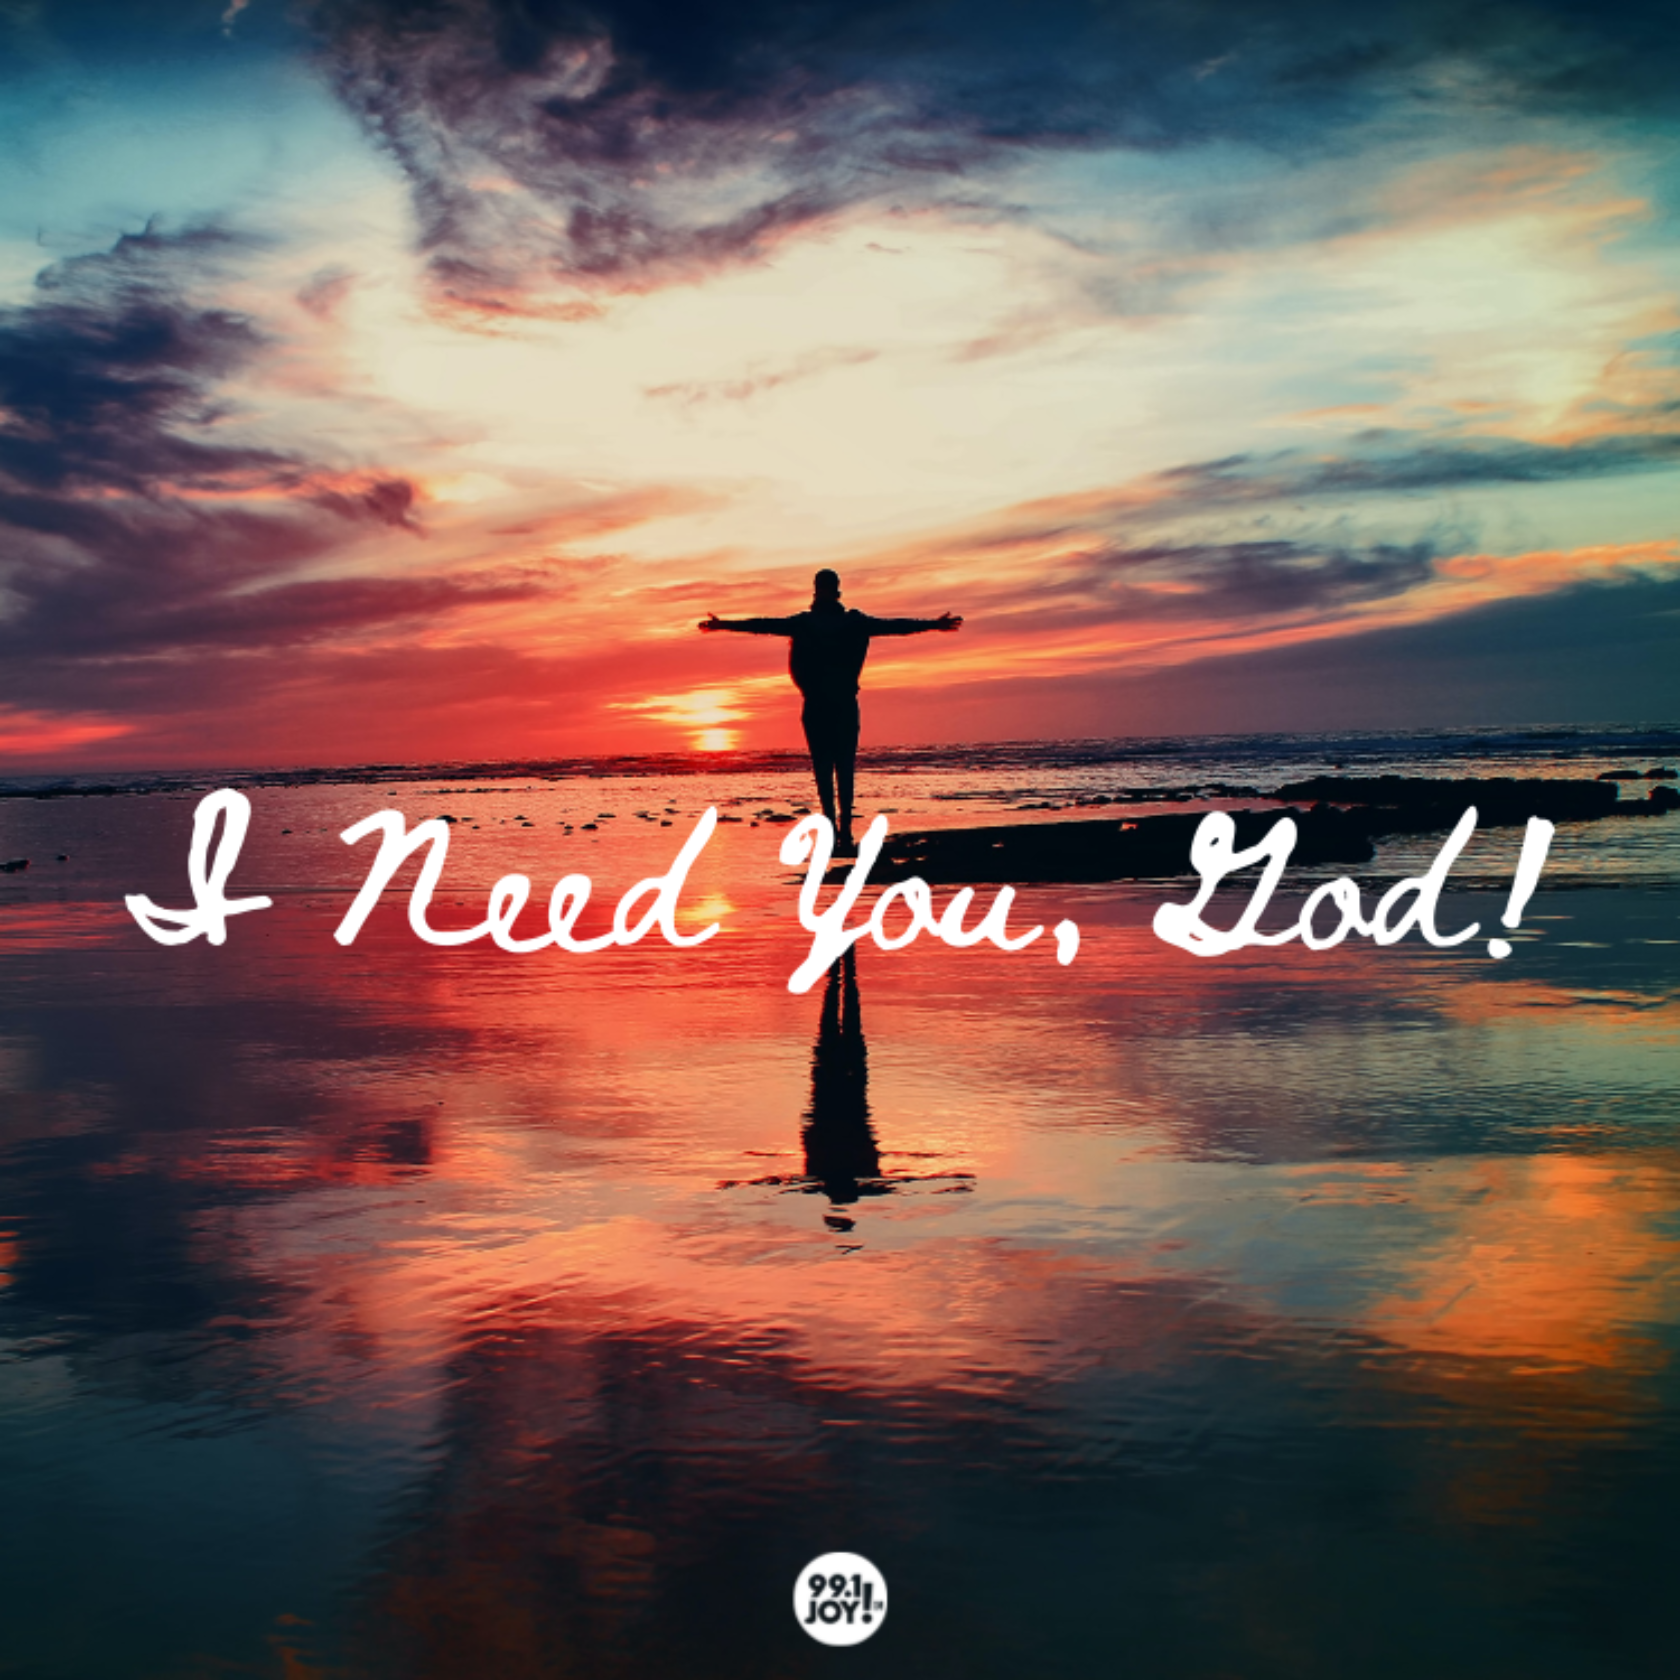 I Need You, God!